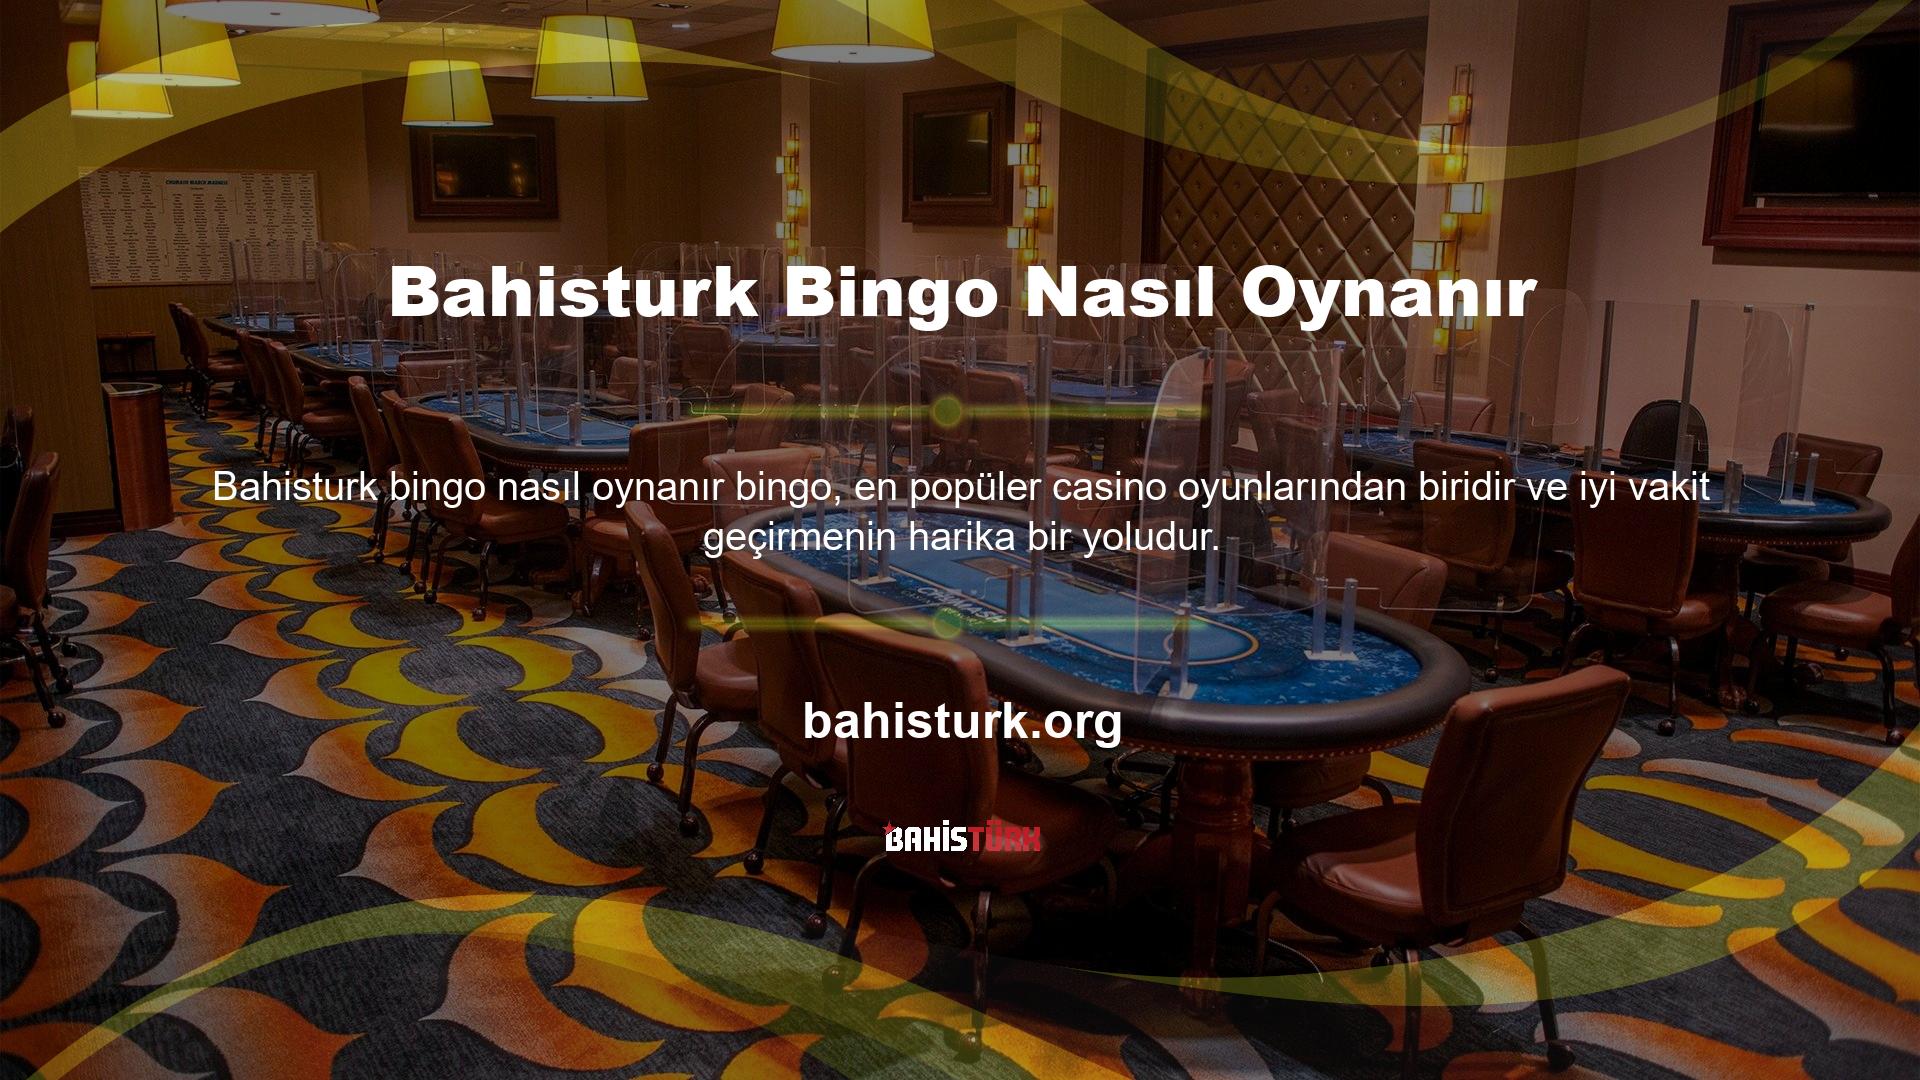 Online Bingo, geçmişte casinolarda oynanan oyunların tanıtılmasıyla popülerlik kazanmıştır